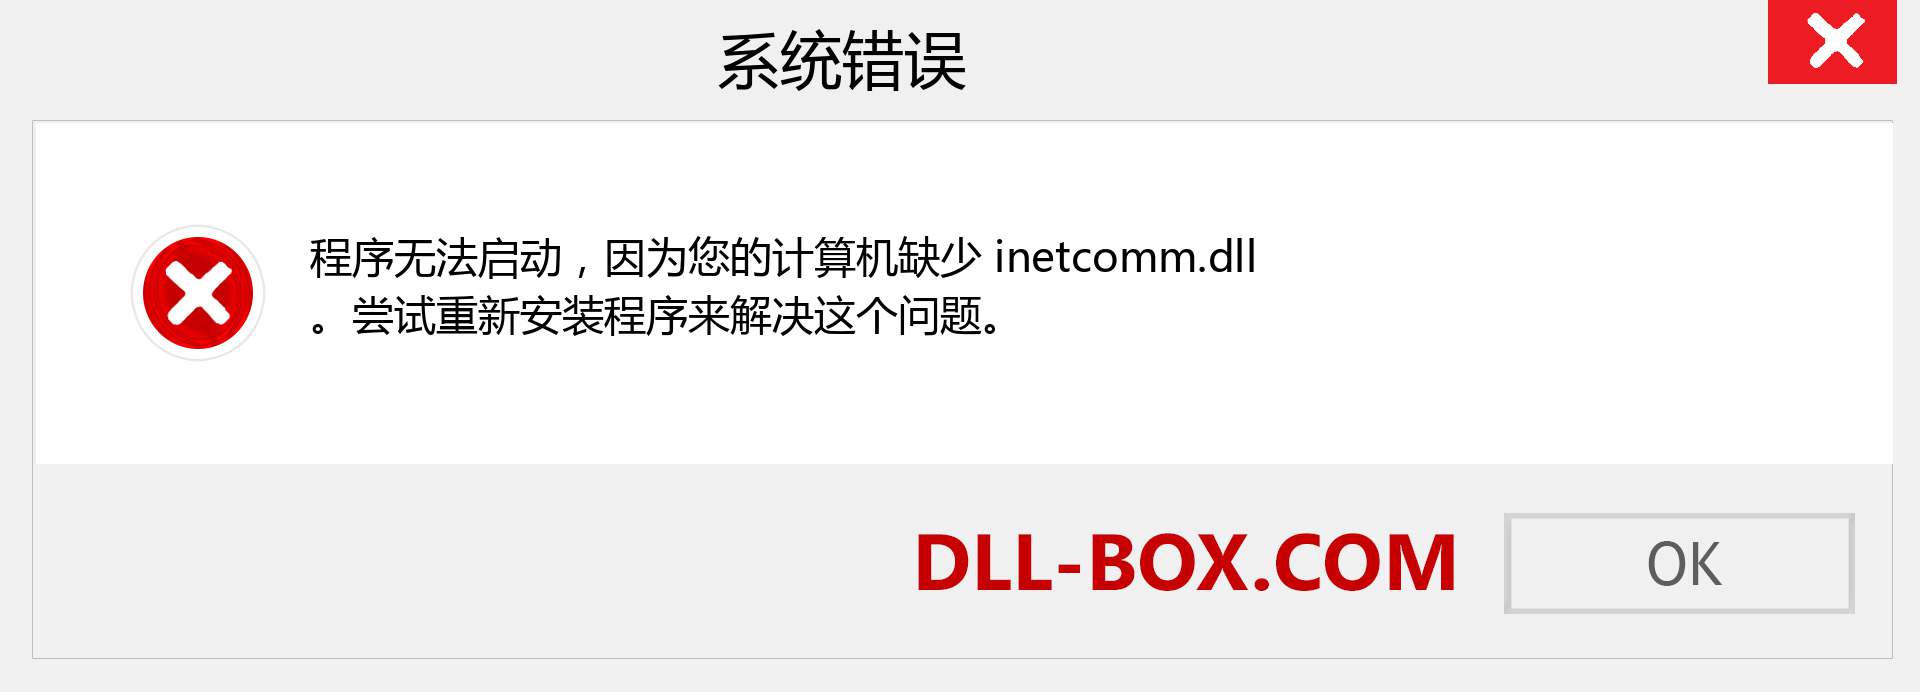 inetcomm.dll 文件丢失？。 适用于 Windows 7、8、10 的下载 - 修复 Windows、照片、图像上的 inetcomm dll 丢失错误